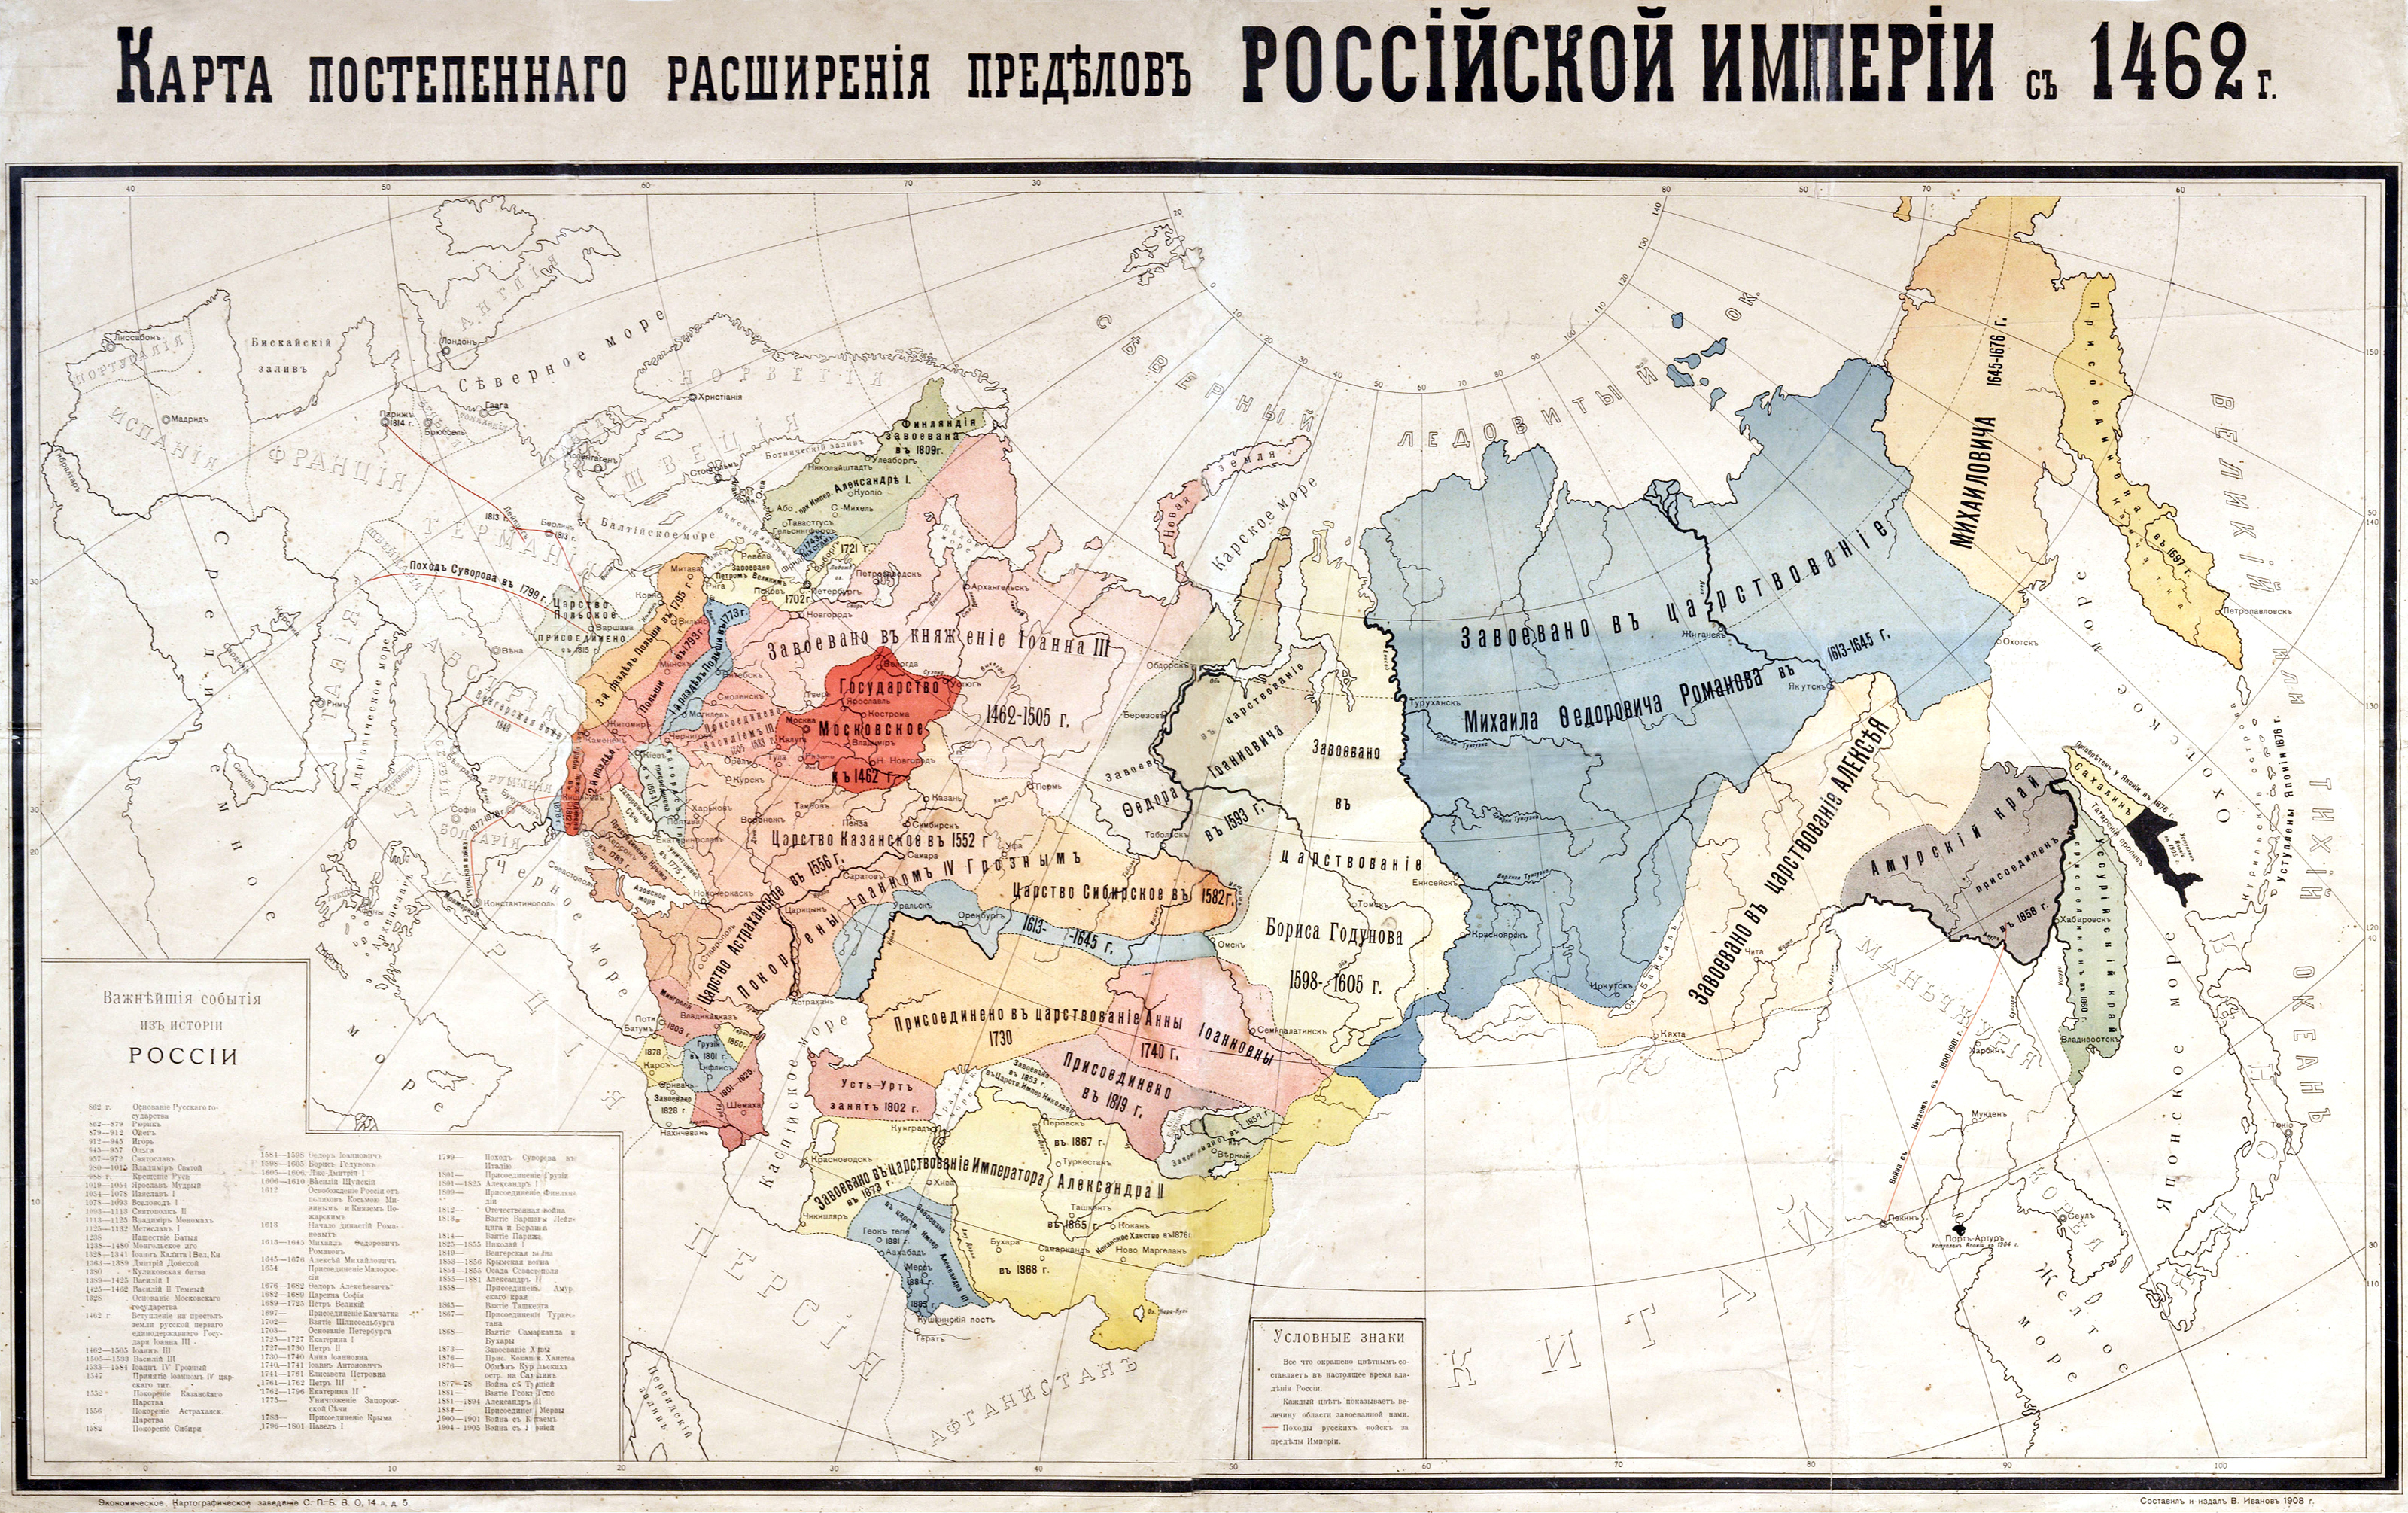 1908. Kartta Venäjän keisarikunnan rajojen vähittäisesta laajentumisesta vuodesta 1462 lähtien